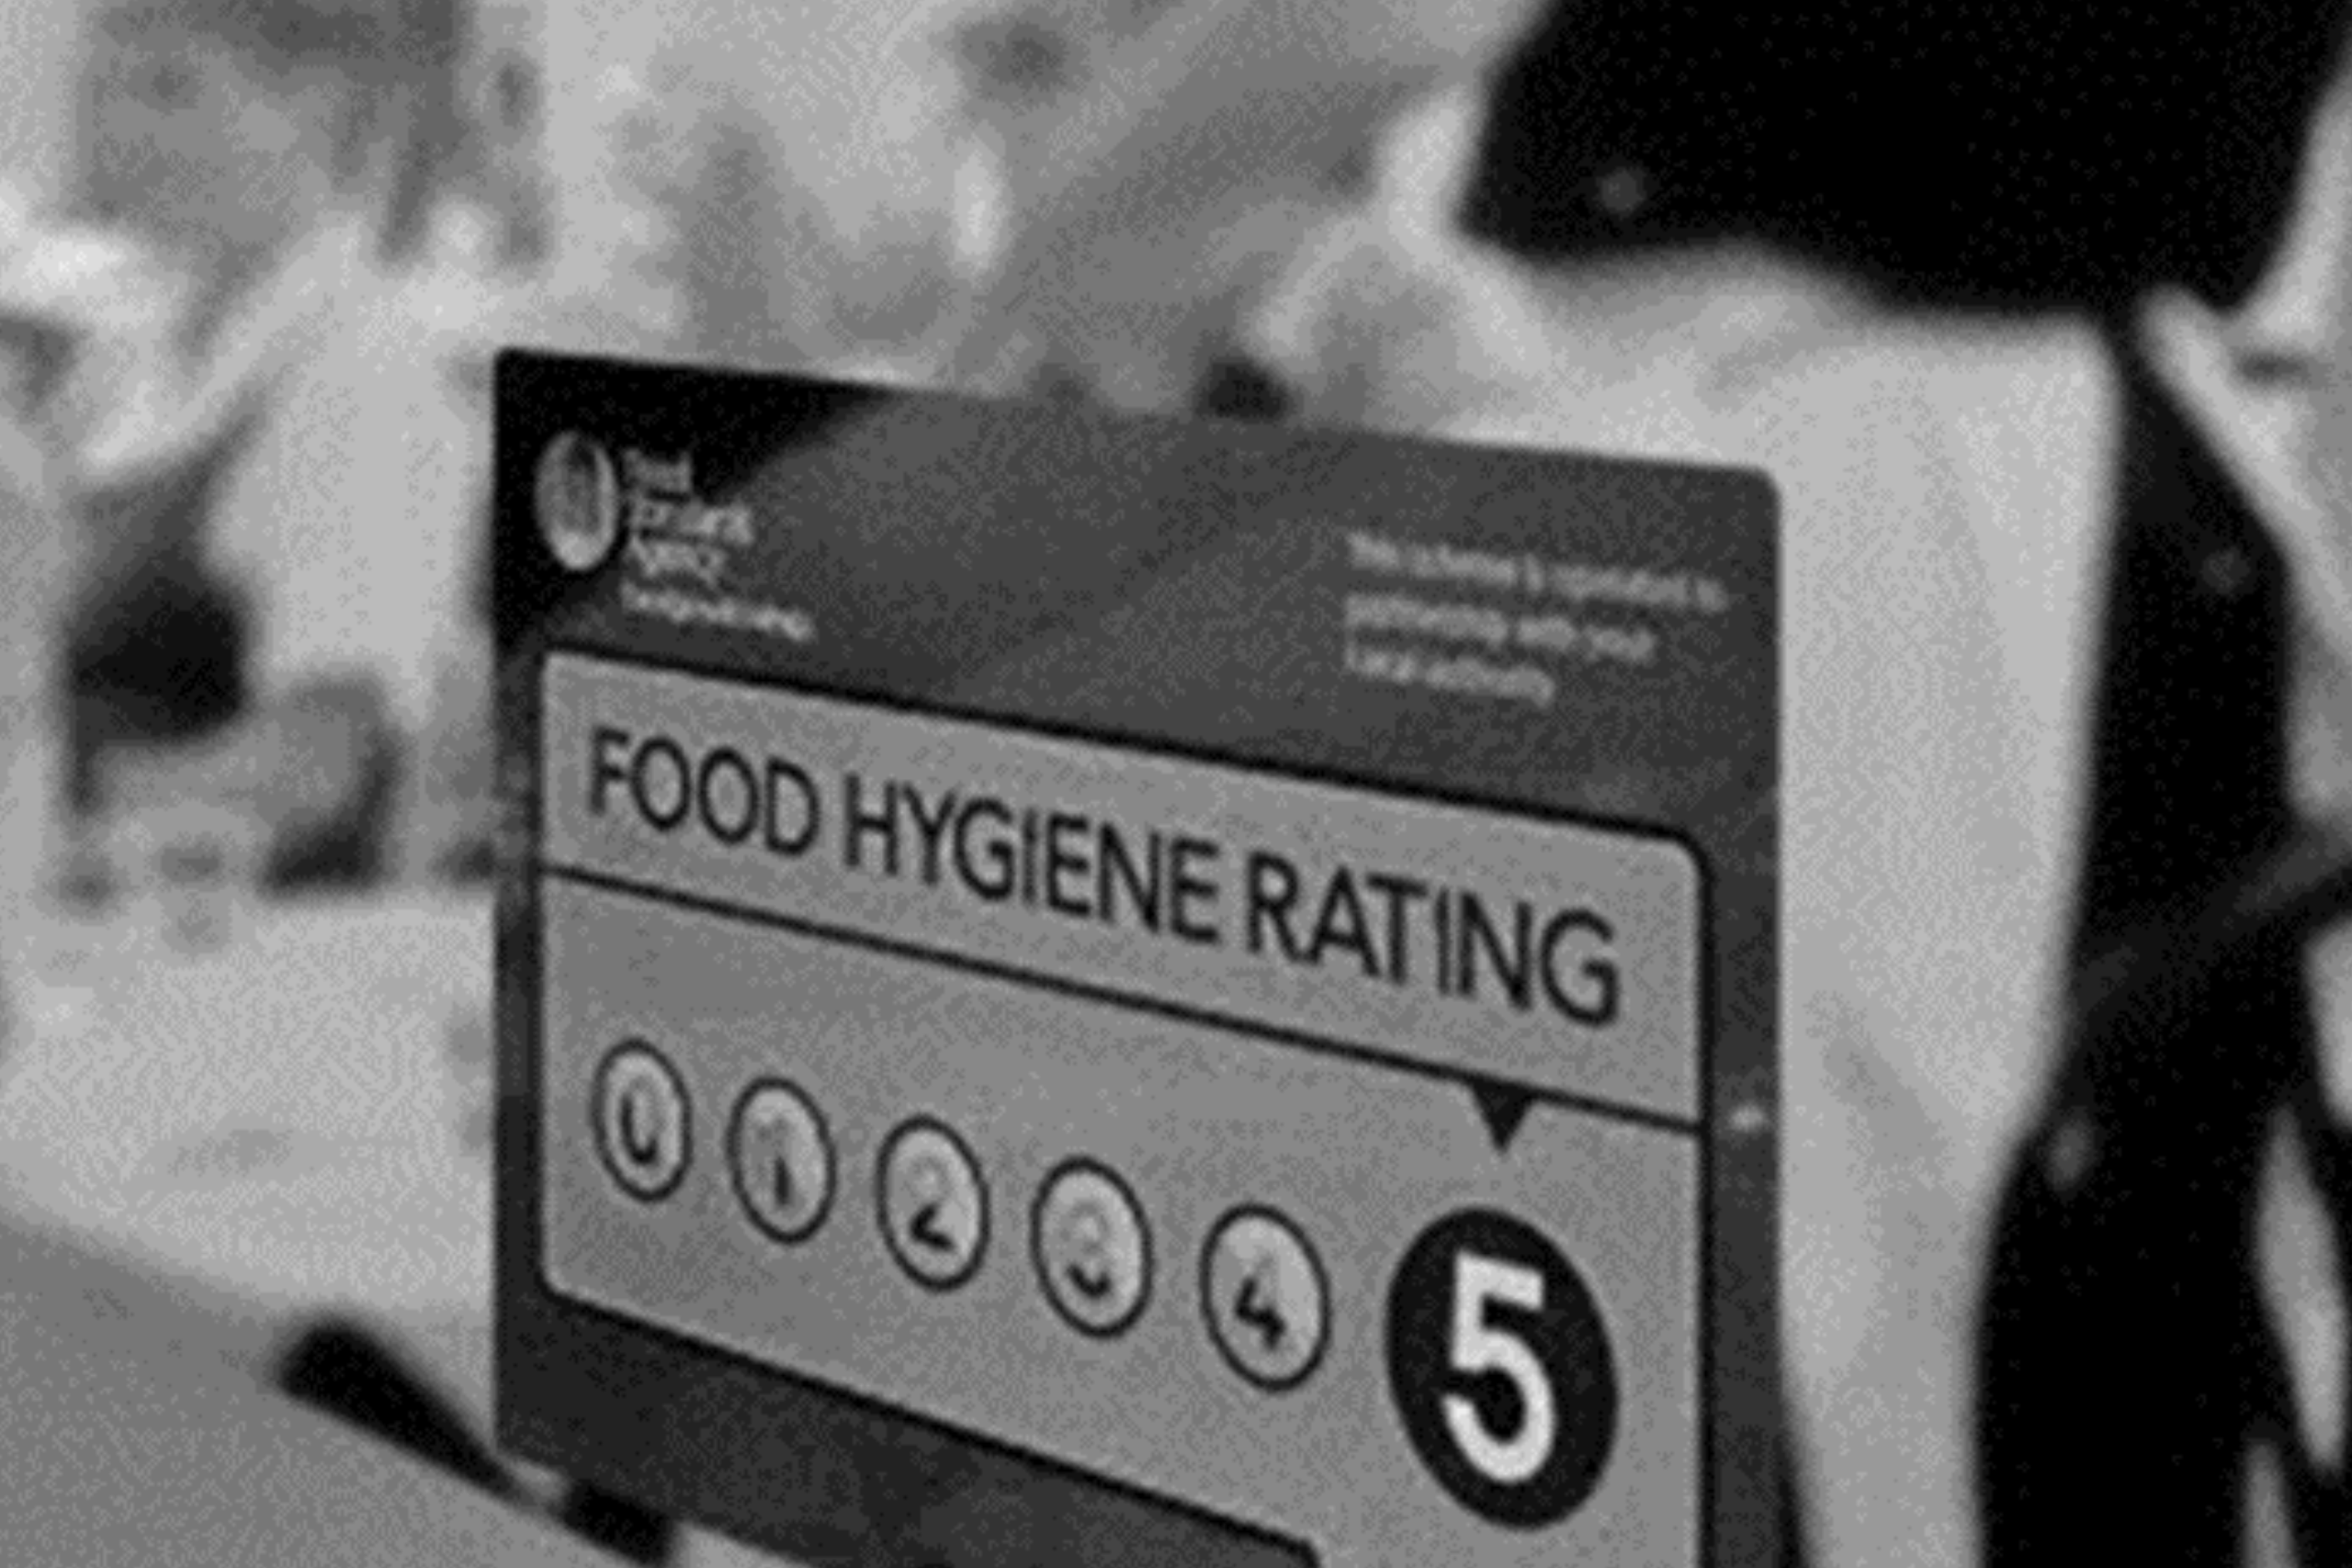 Restaurant door with food standard rating